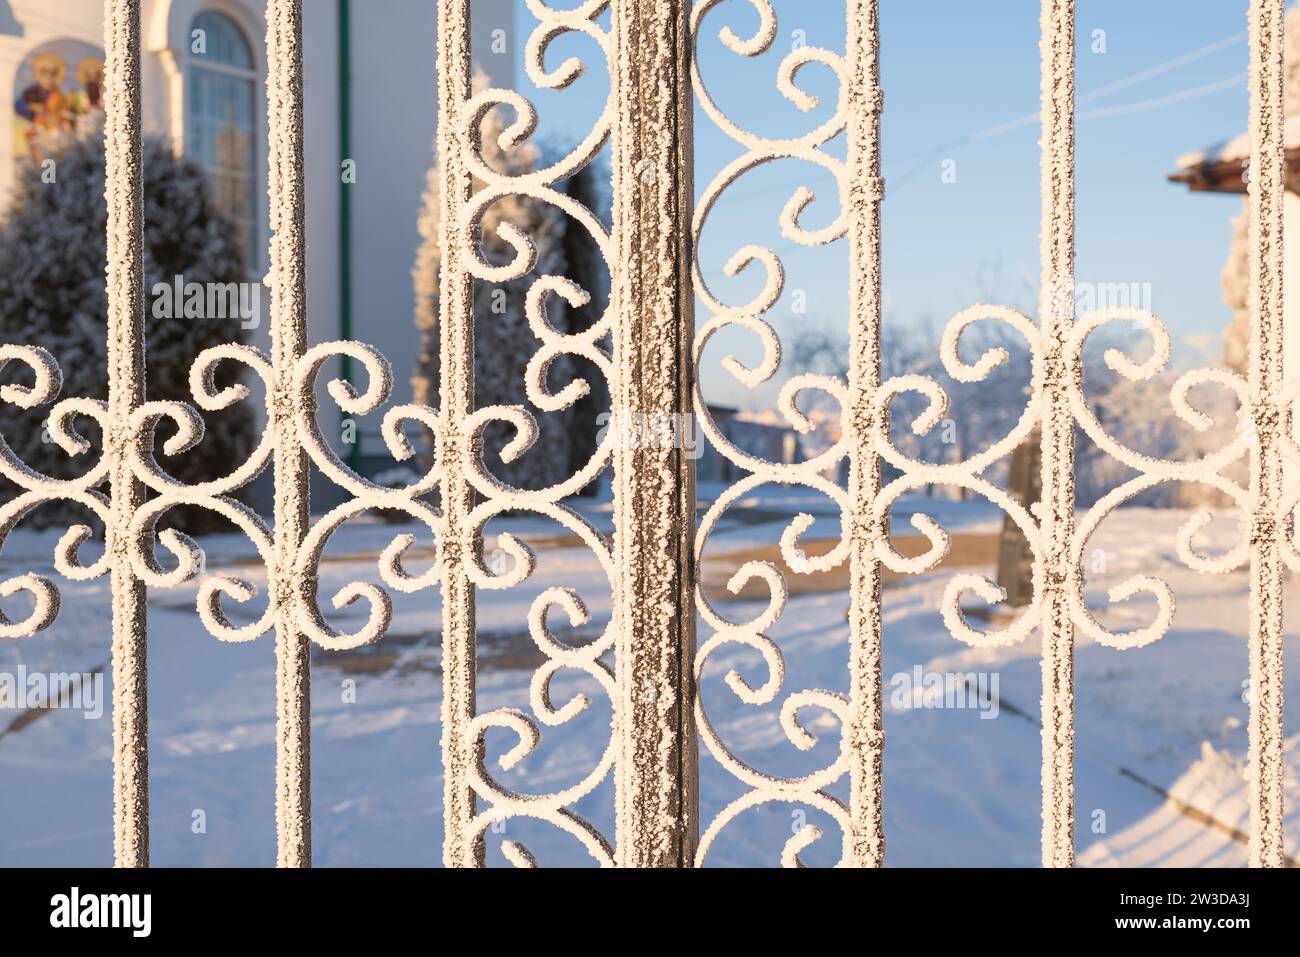 Immagine di una recinzione innevata. Concetto fiabesco invernale Foto Stock